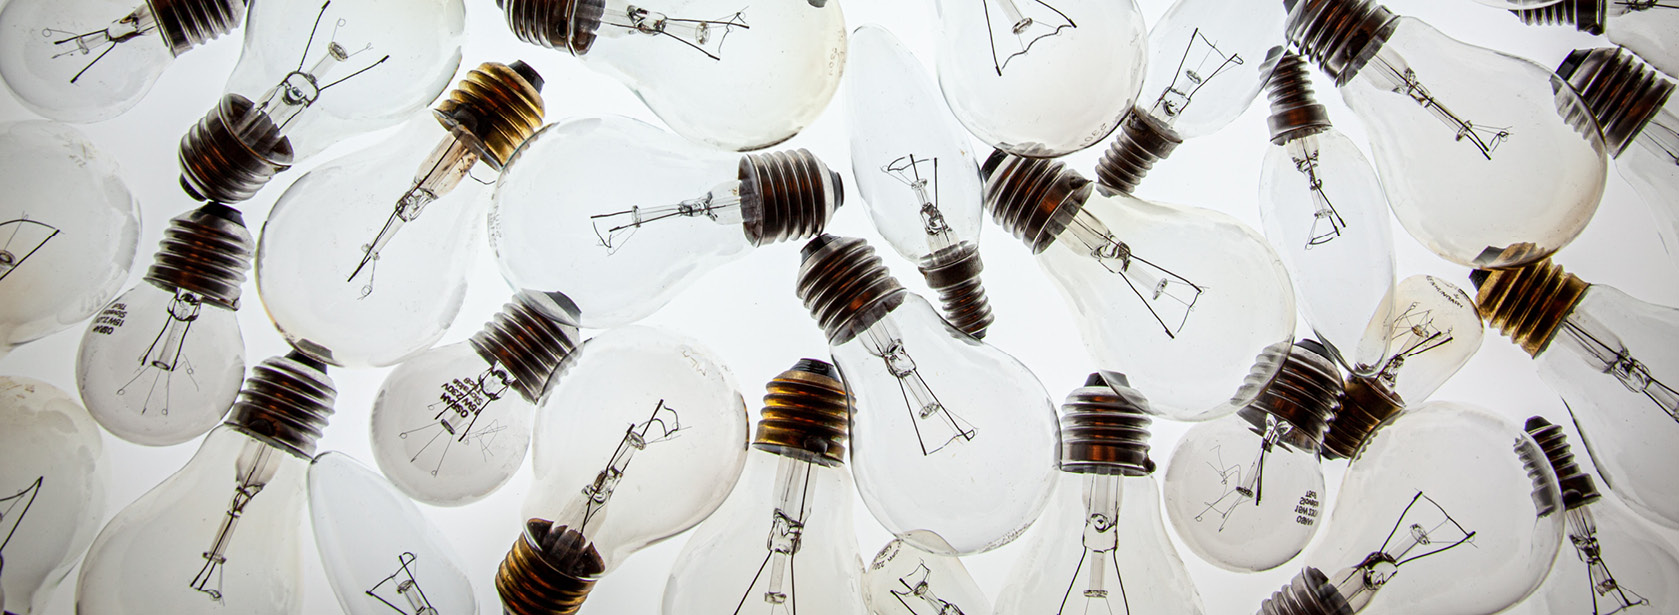 A group of lightbulbs.